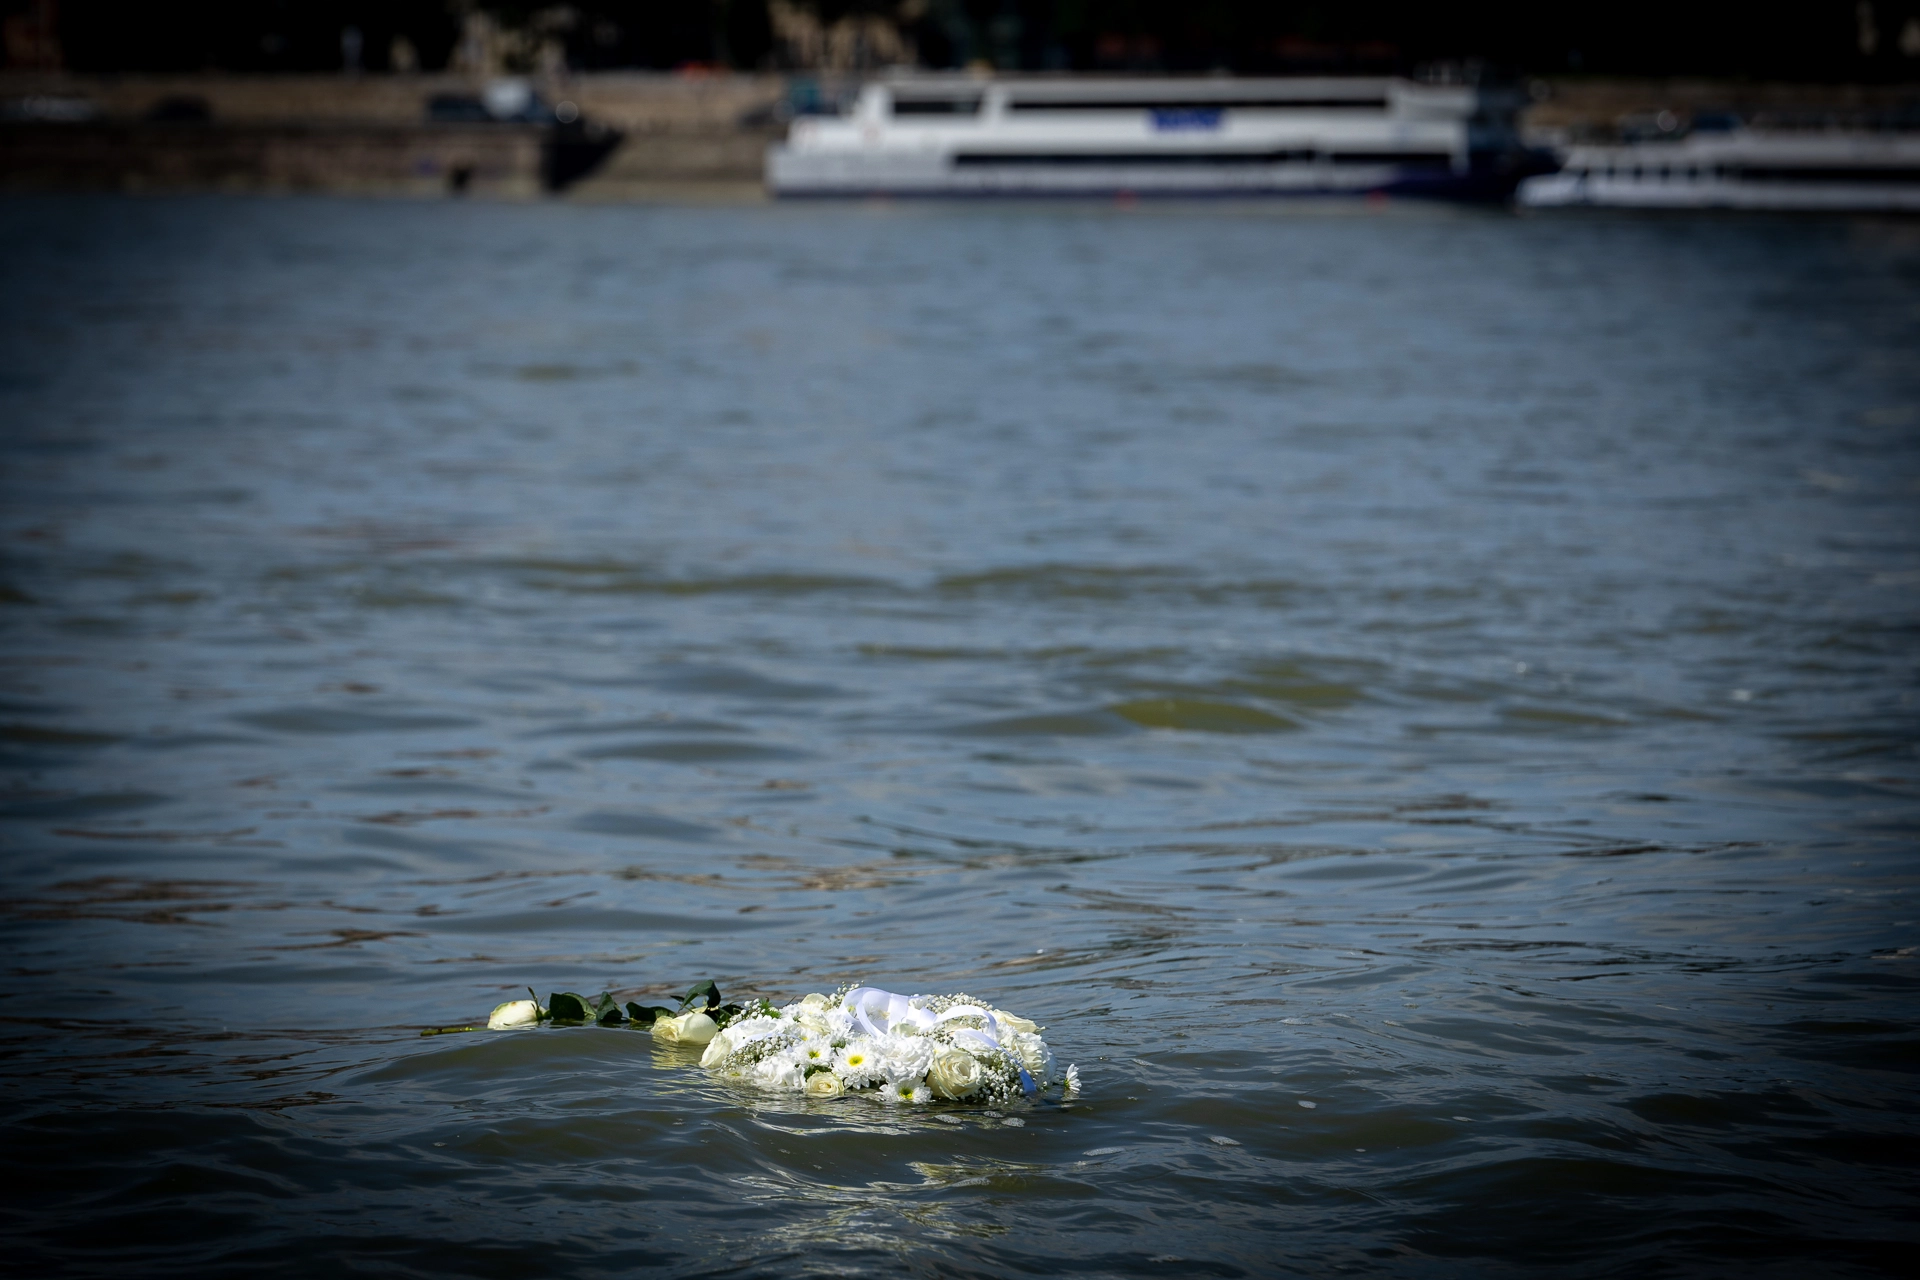 A Hableány sétahajó tragédiájának ötödik évfordulóján, a Dunán, a baleset helyszínén koszorúzással emlékezett meg az áldozatokról a Budapesti Rendőr-főkapitányság